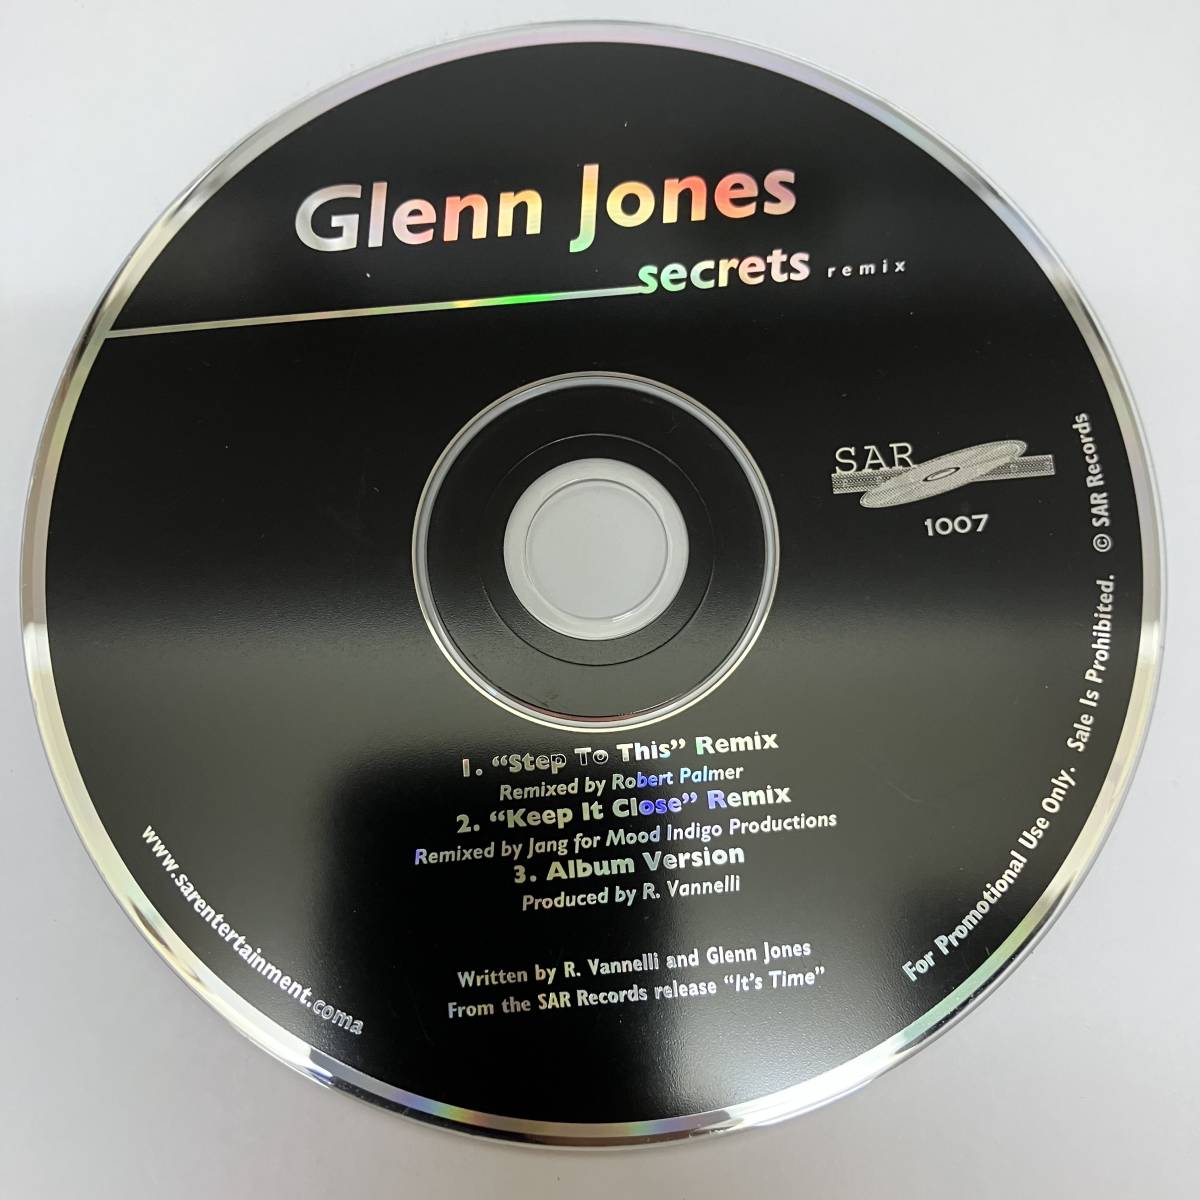 黒箱3 HIPHOP,R&B GLENN JONES - SECRETS REMIX シングル CD 中古品_画像1